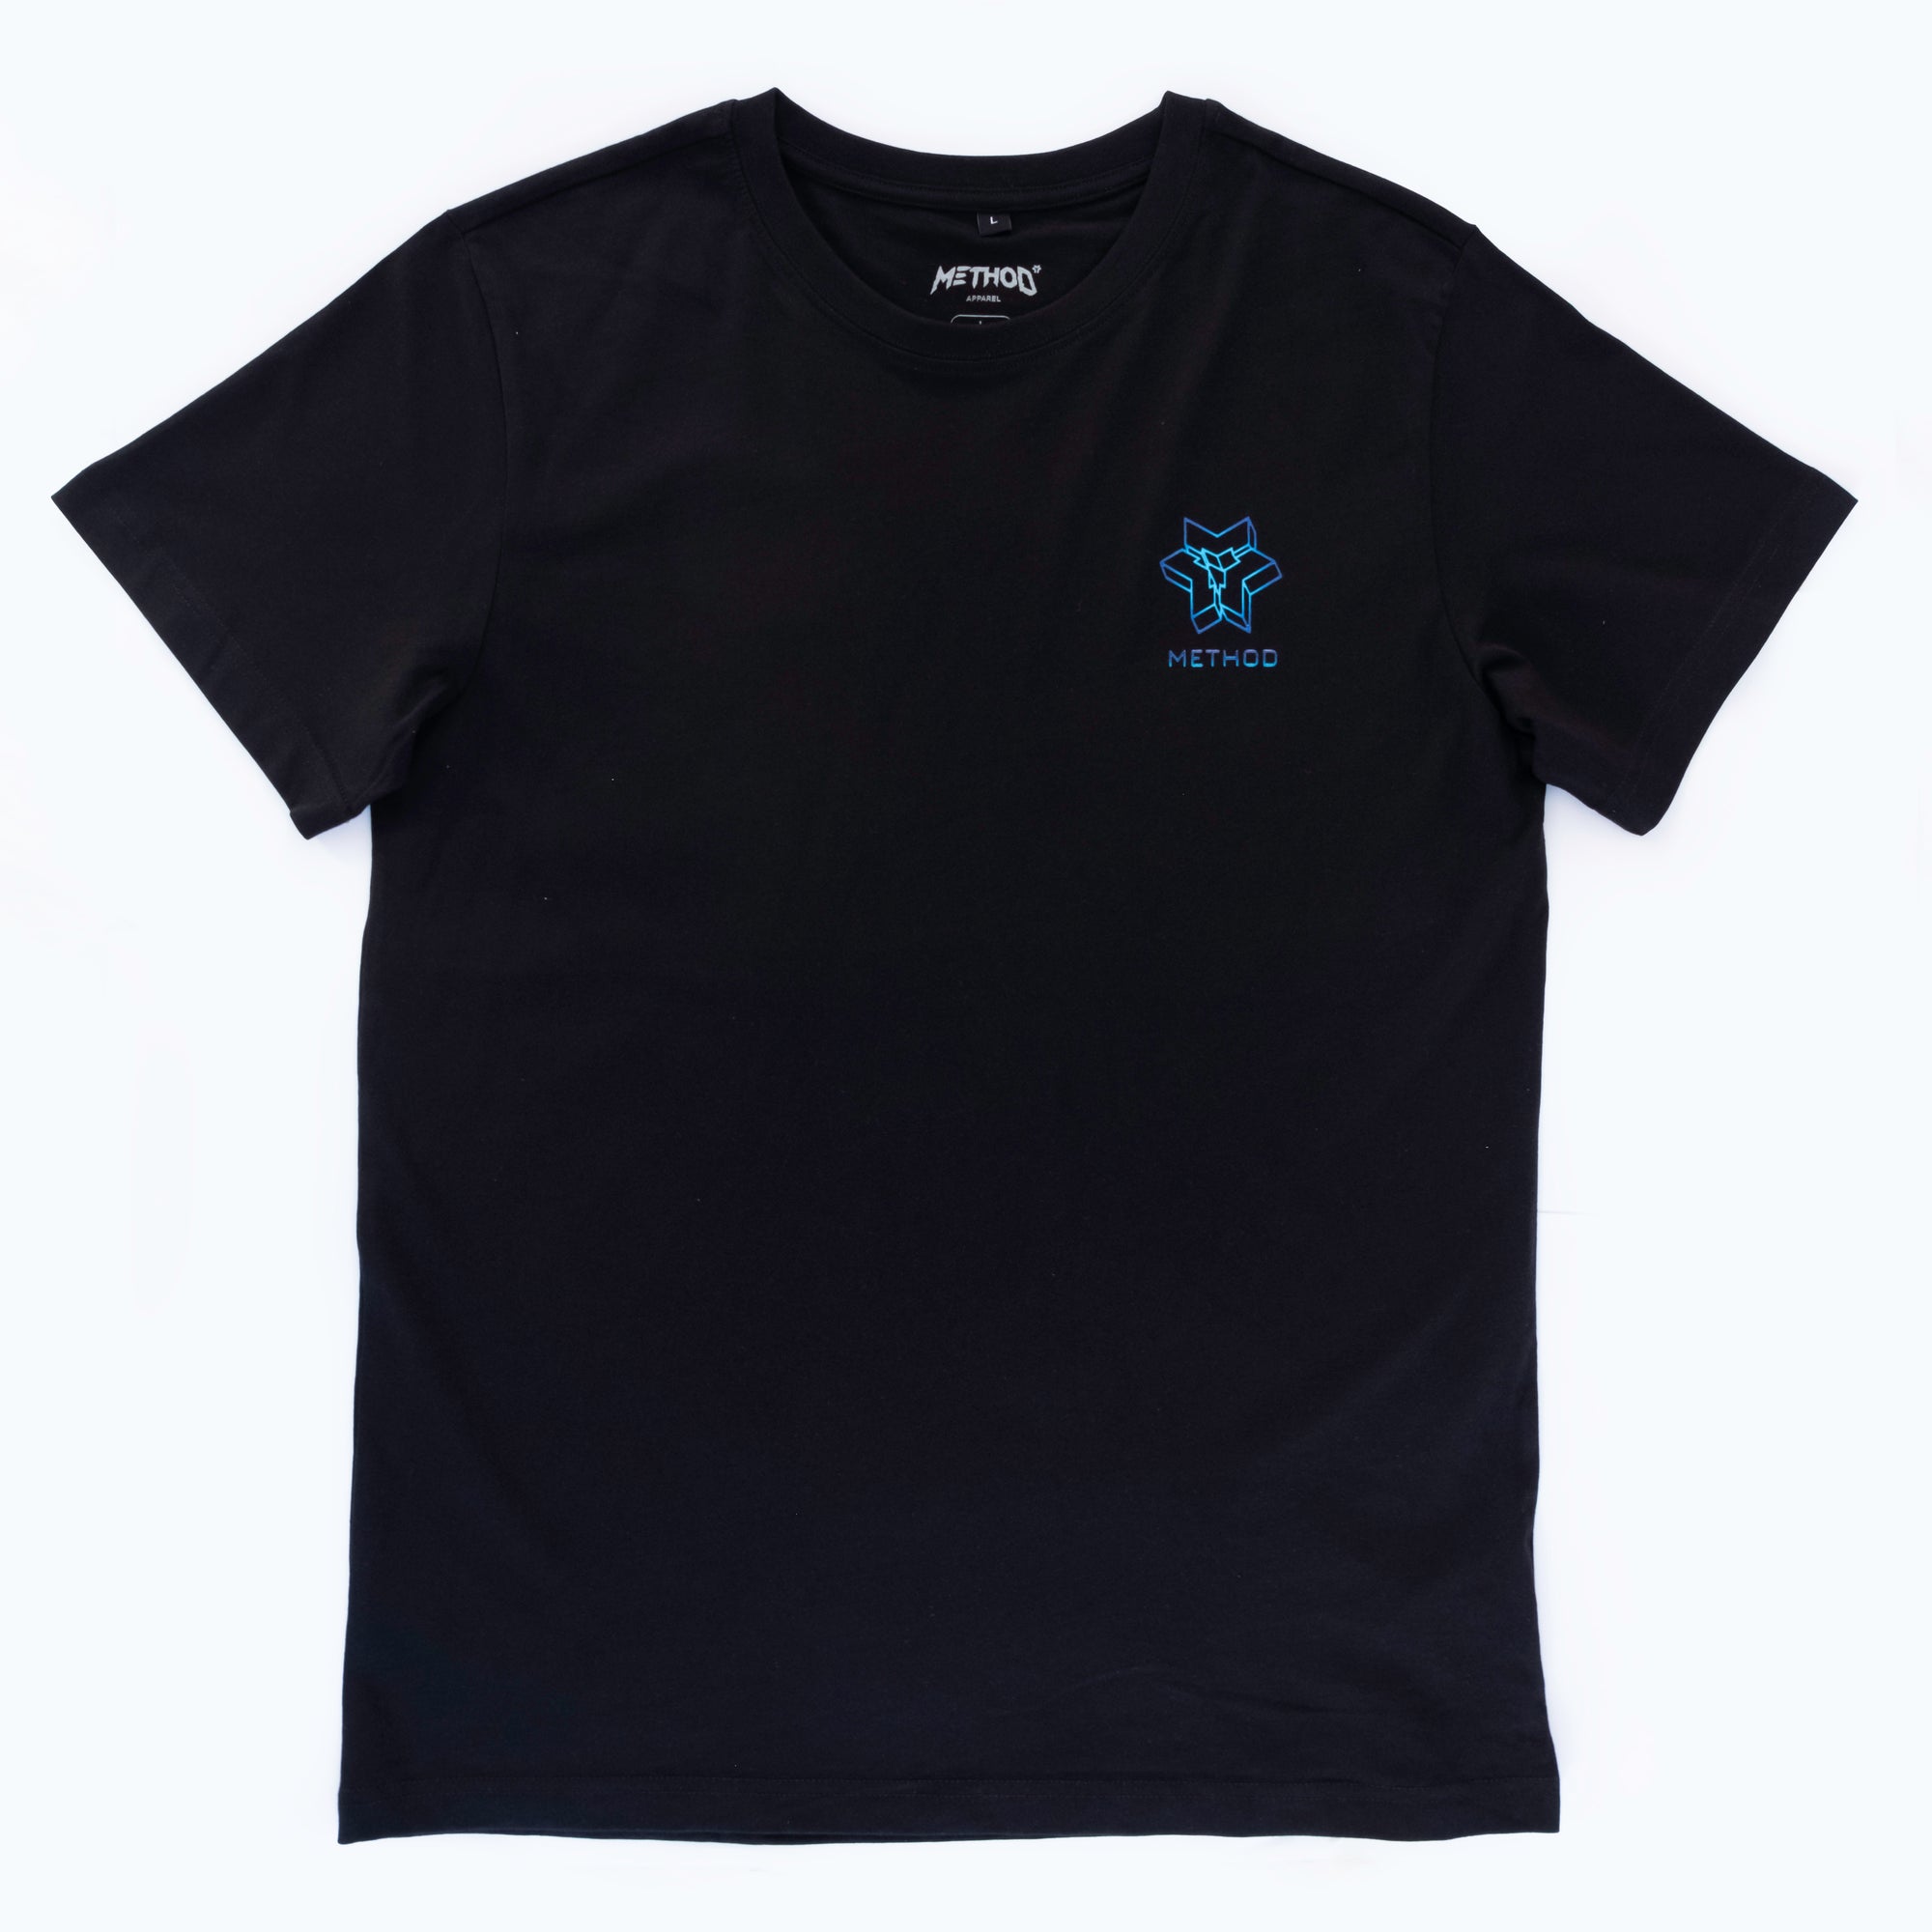 Method Methodverse T-Shirt - Black